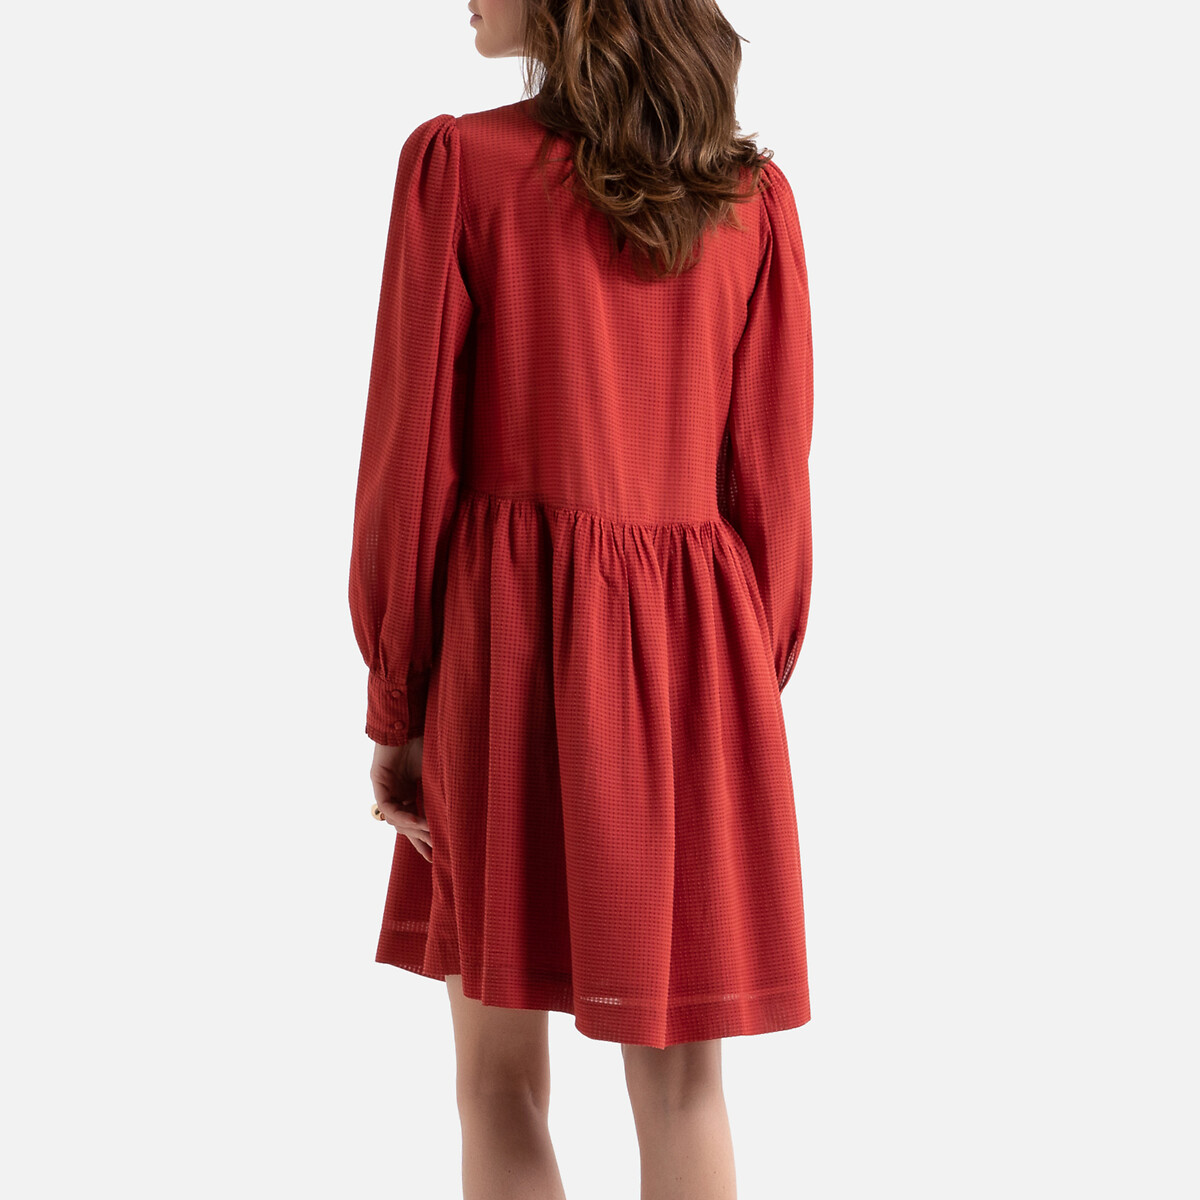 Платье La Redoute Расклешенное короткое с отделкой воланами 42 (FR) - 48 (RUS) красный, размер 42 (FR) - 48 (RUS) Расклешенное короткое с отделкой воланами 42 (FR) - 48 (RUS) красный - фото 4